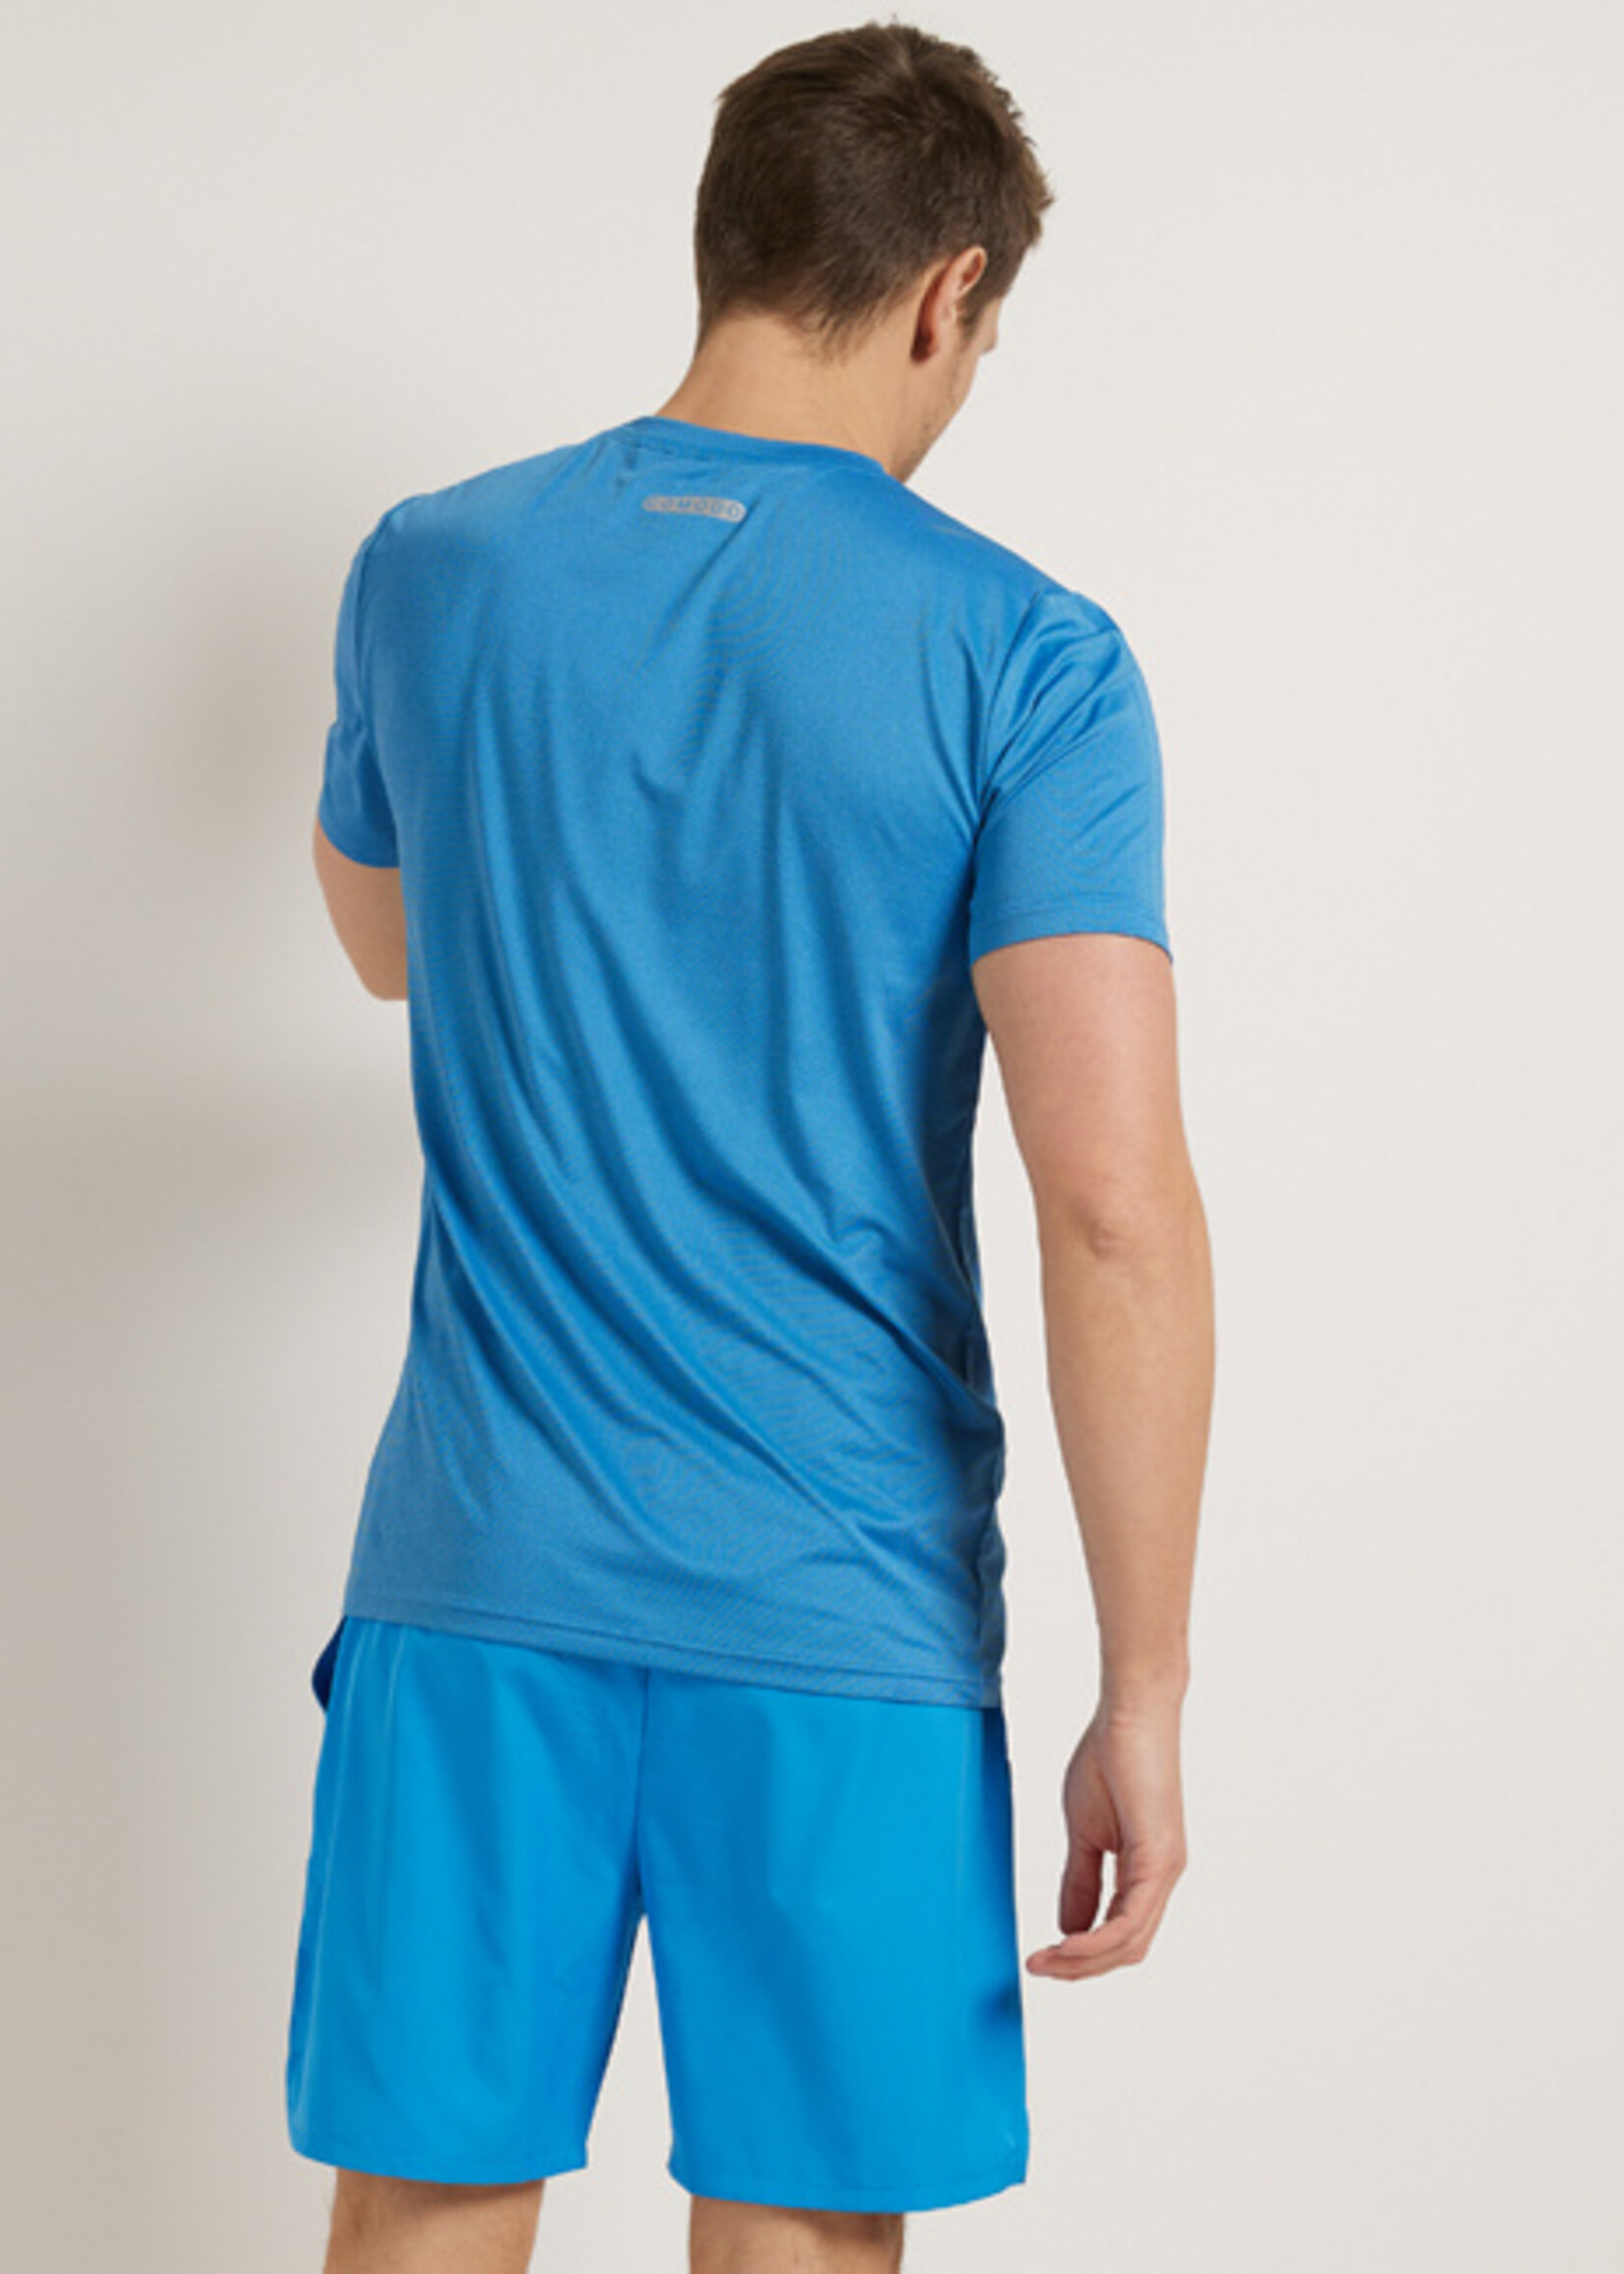 Sport Shirt Blue